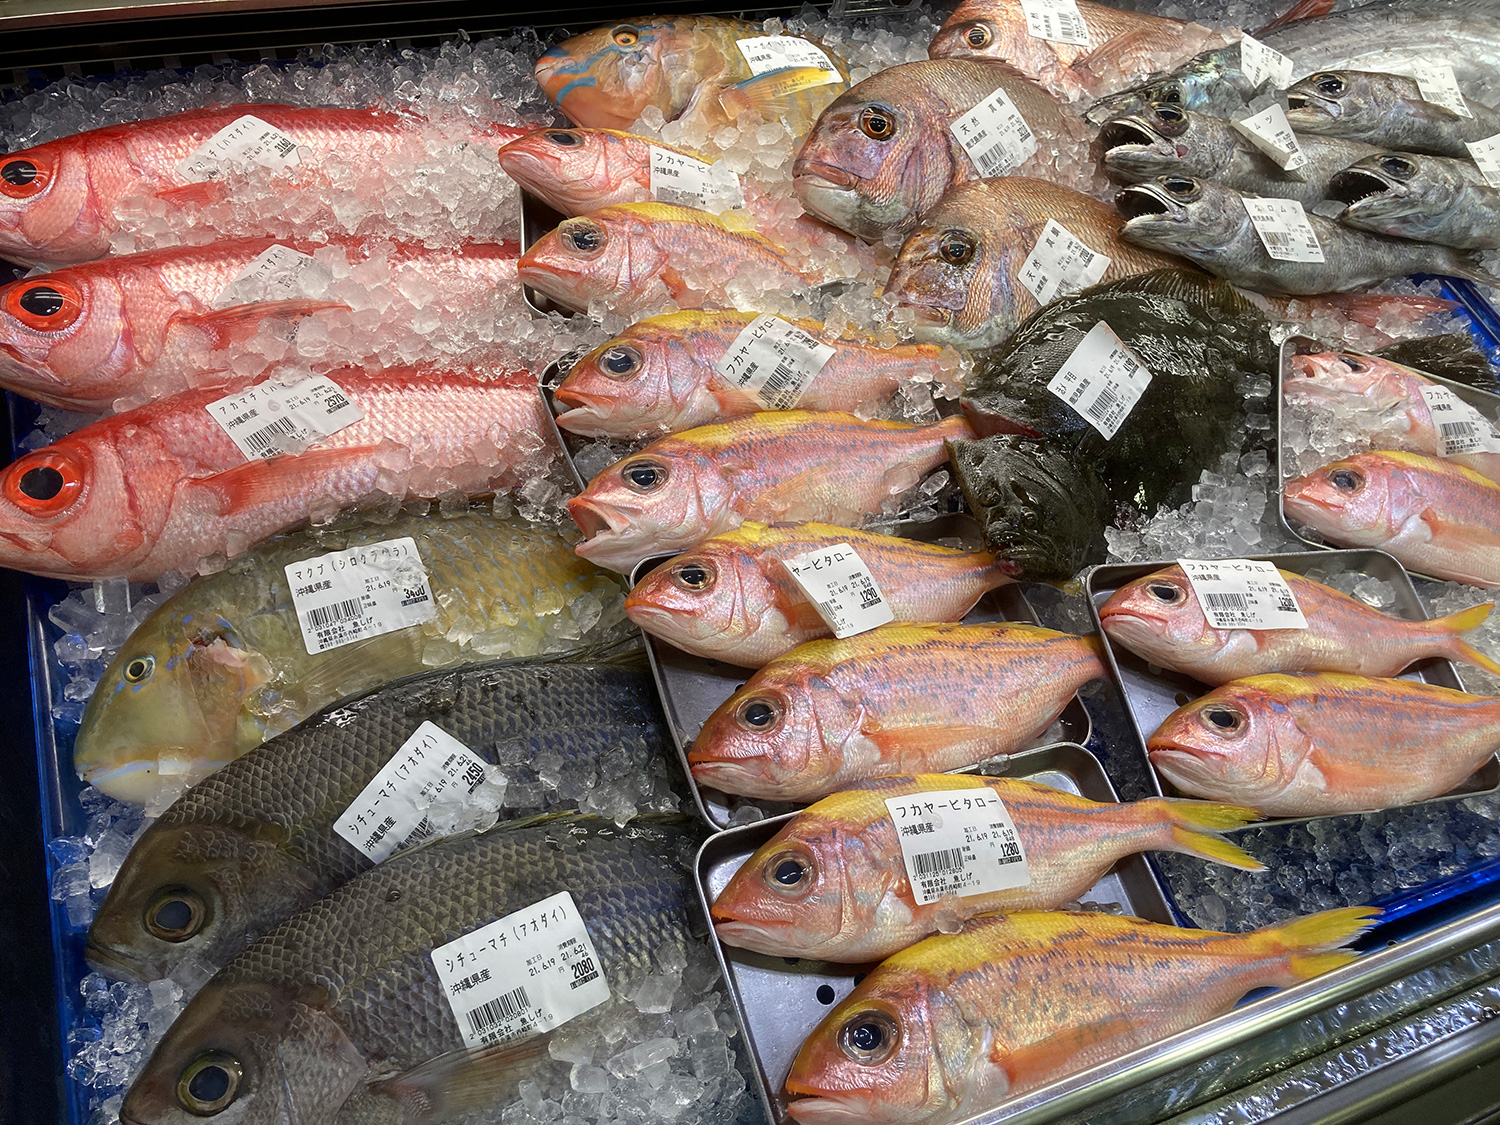 アカマチ、マクブ、シチューマチ、ビタローなど、沖縄の魚がたくさん。<br>目がキレイで新鮮そうです。